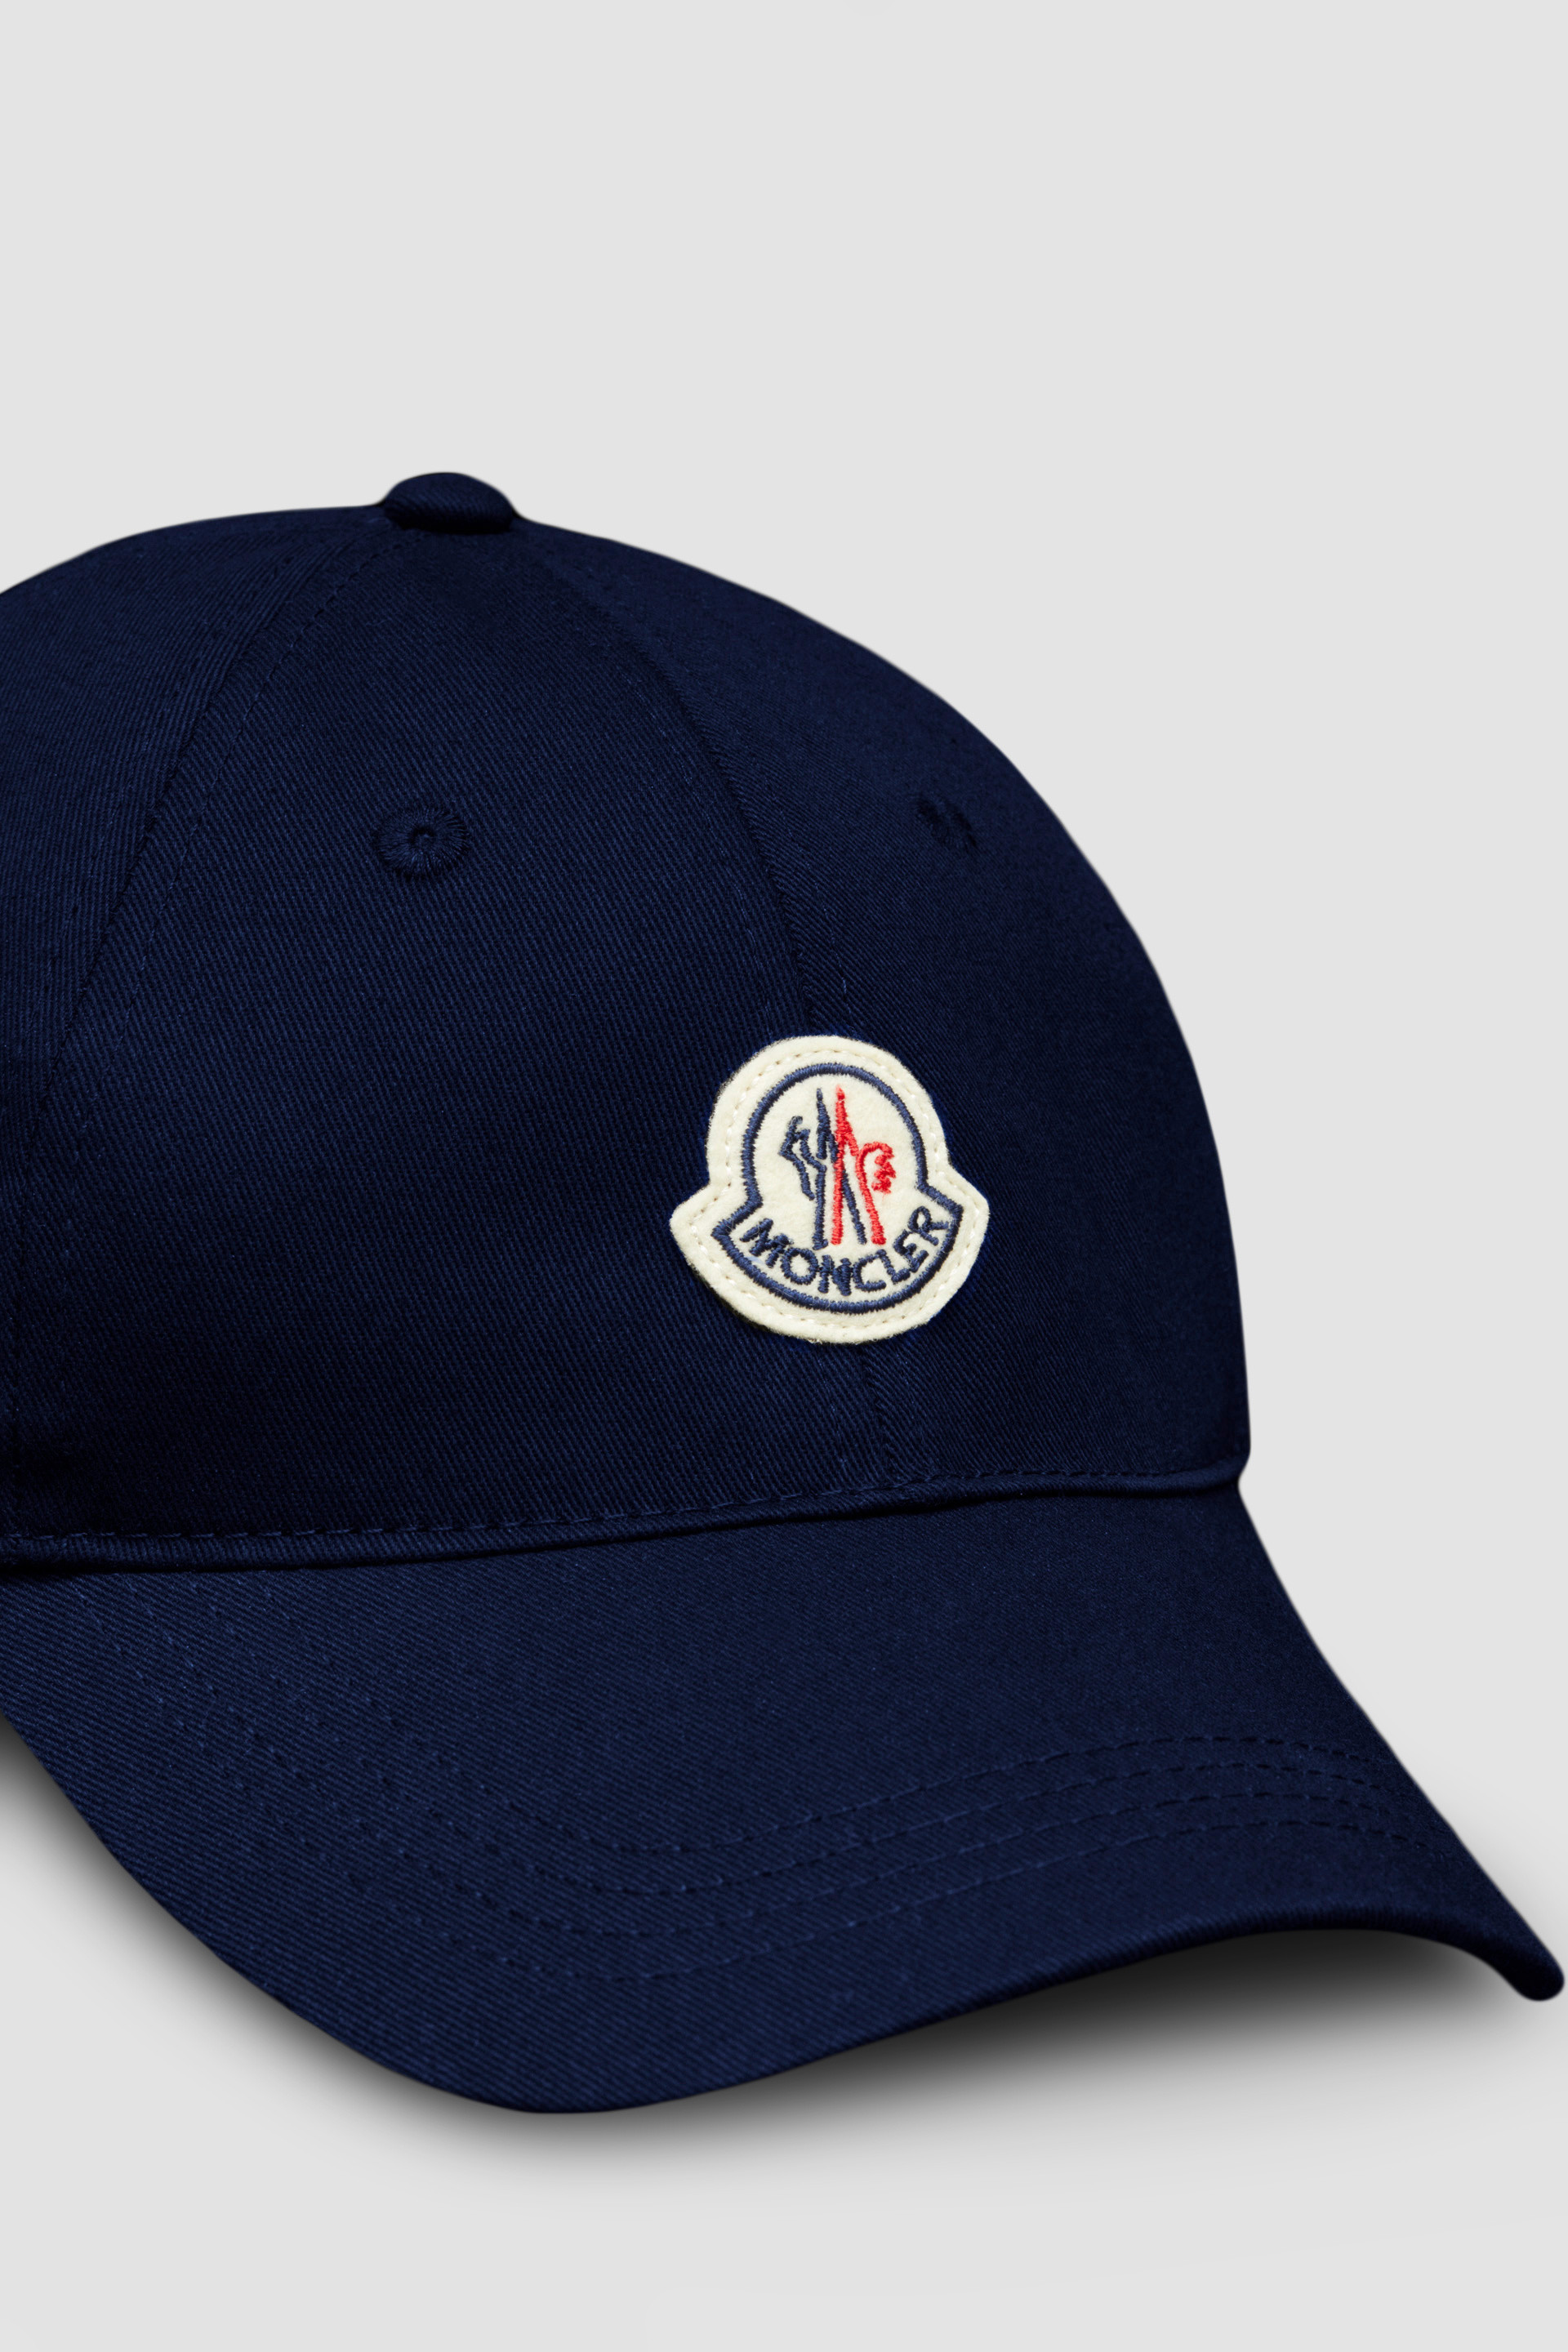 HU - Beanies Men Gabardine & Moncler | Blue for Baseball Cap Hats